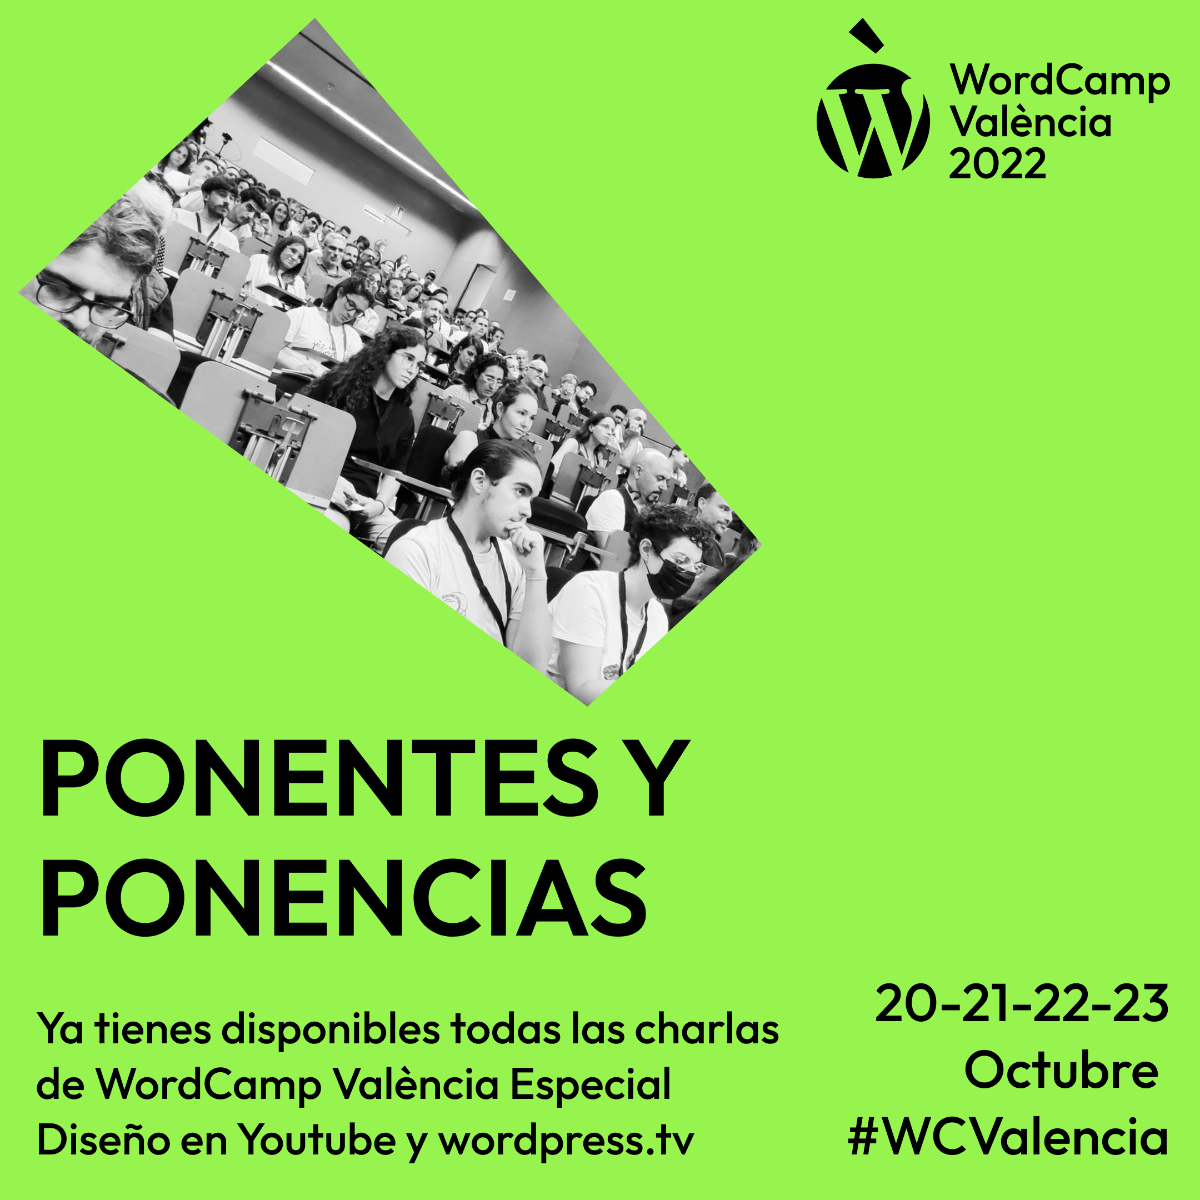 Ponencias WCVLC22